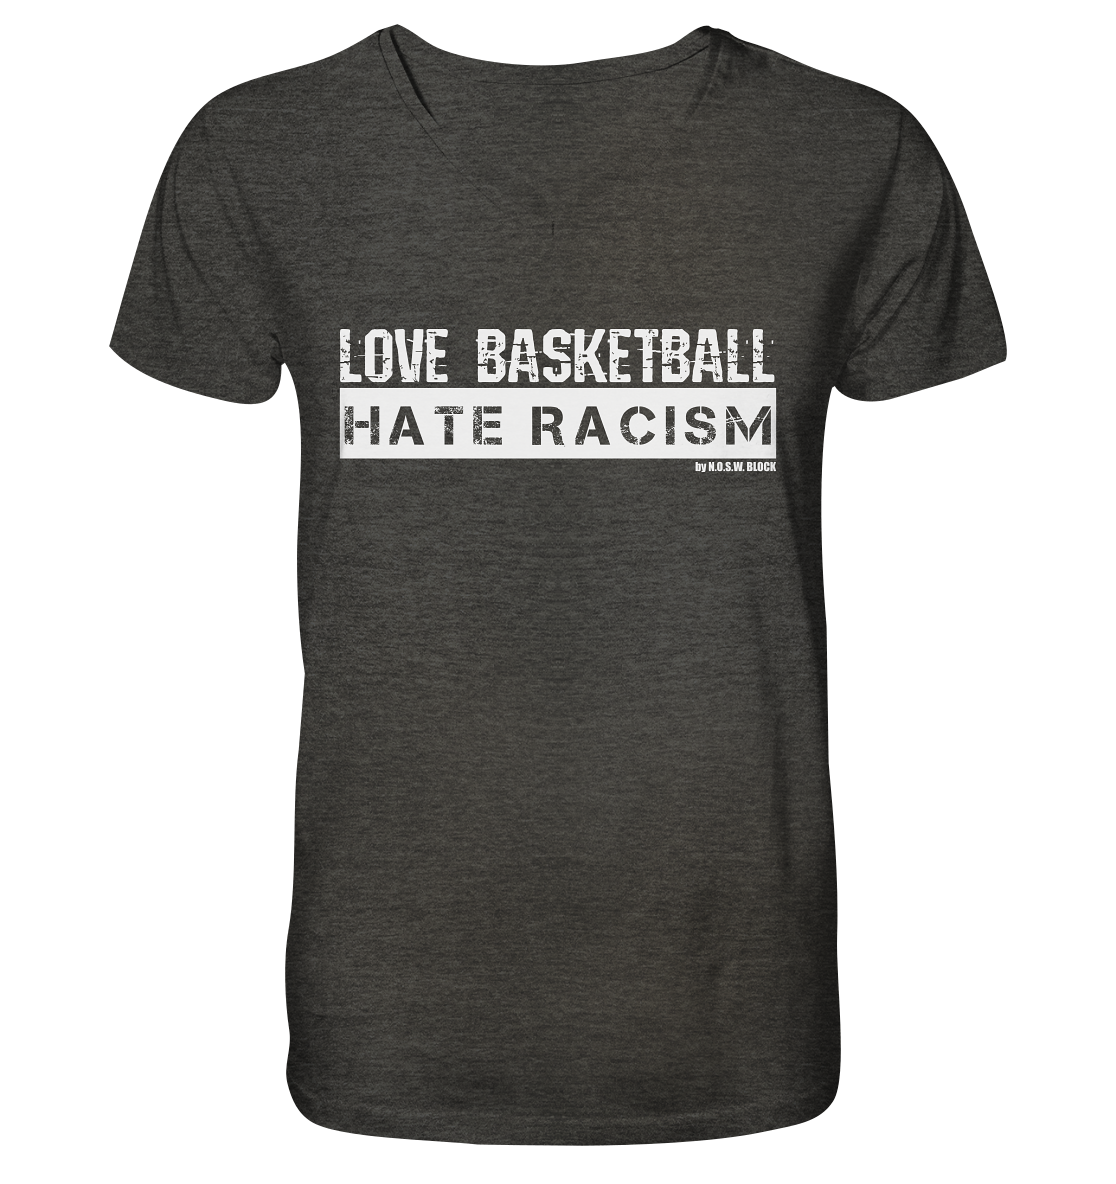 N.O.S.W. BLOCK Gegen Rechts Shirt "LOVE BASKETBALL HATE RACISM" Männer Organic V-Neck T-Shirt dark heather grau